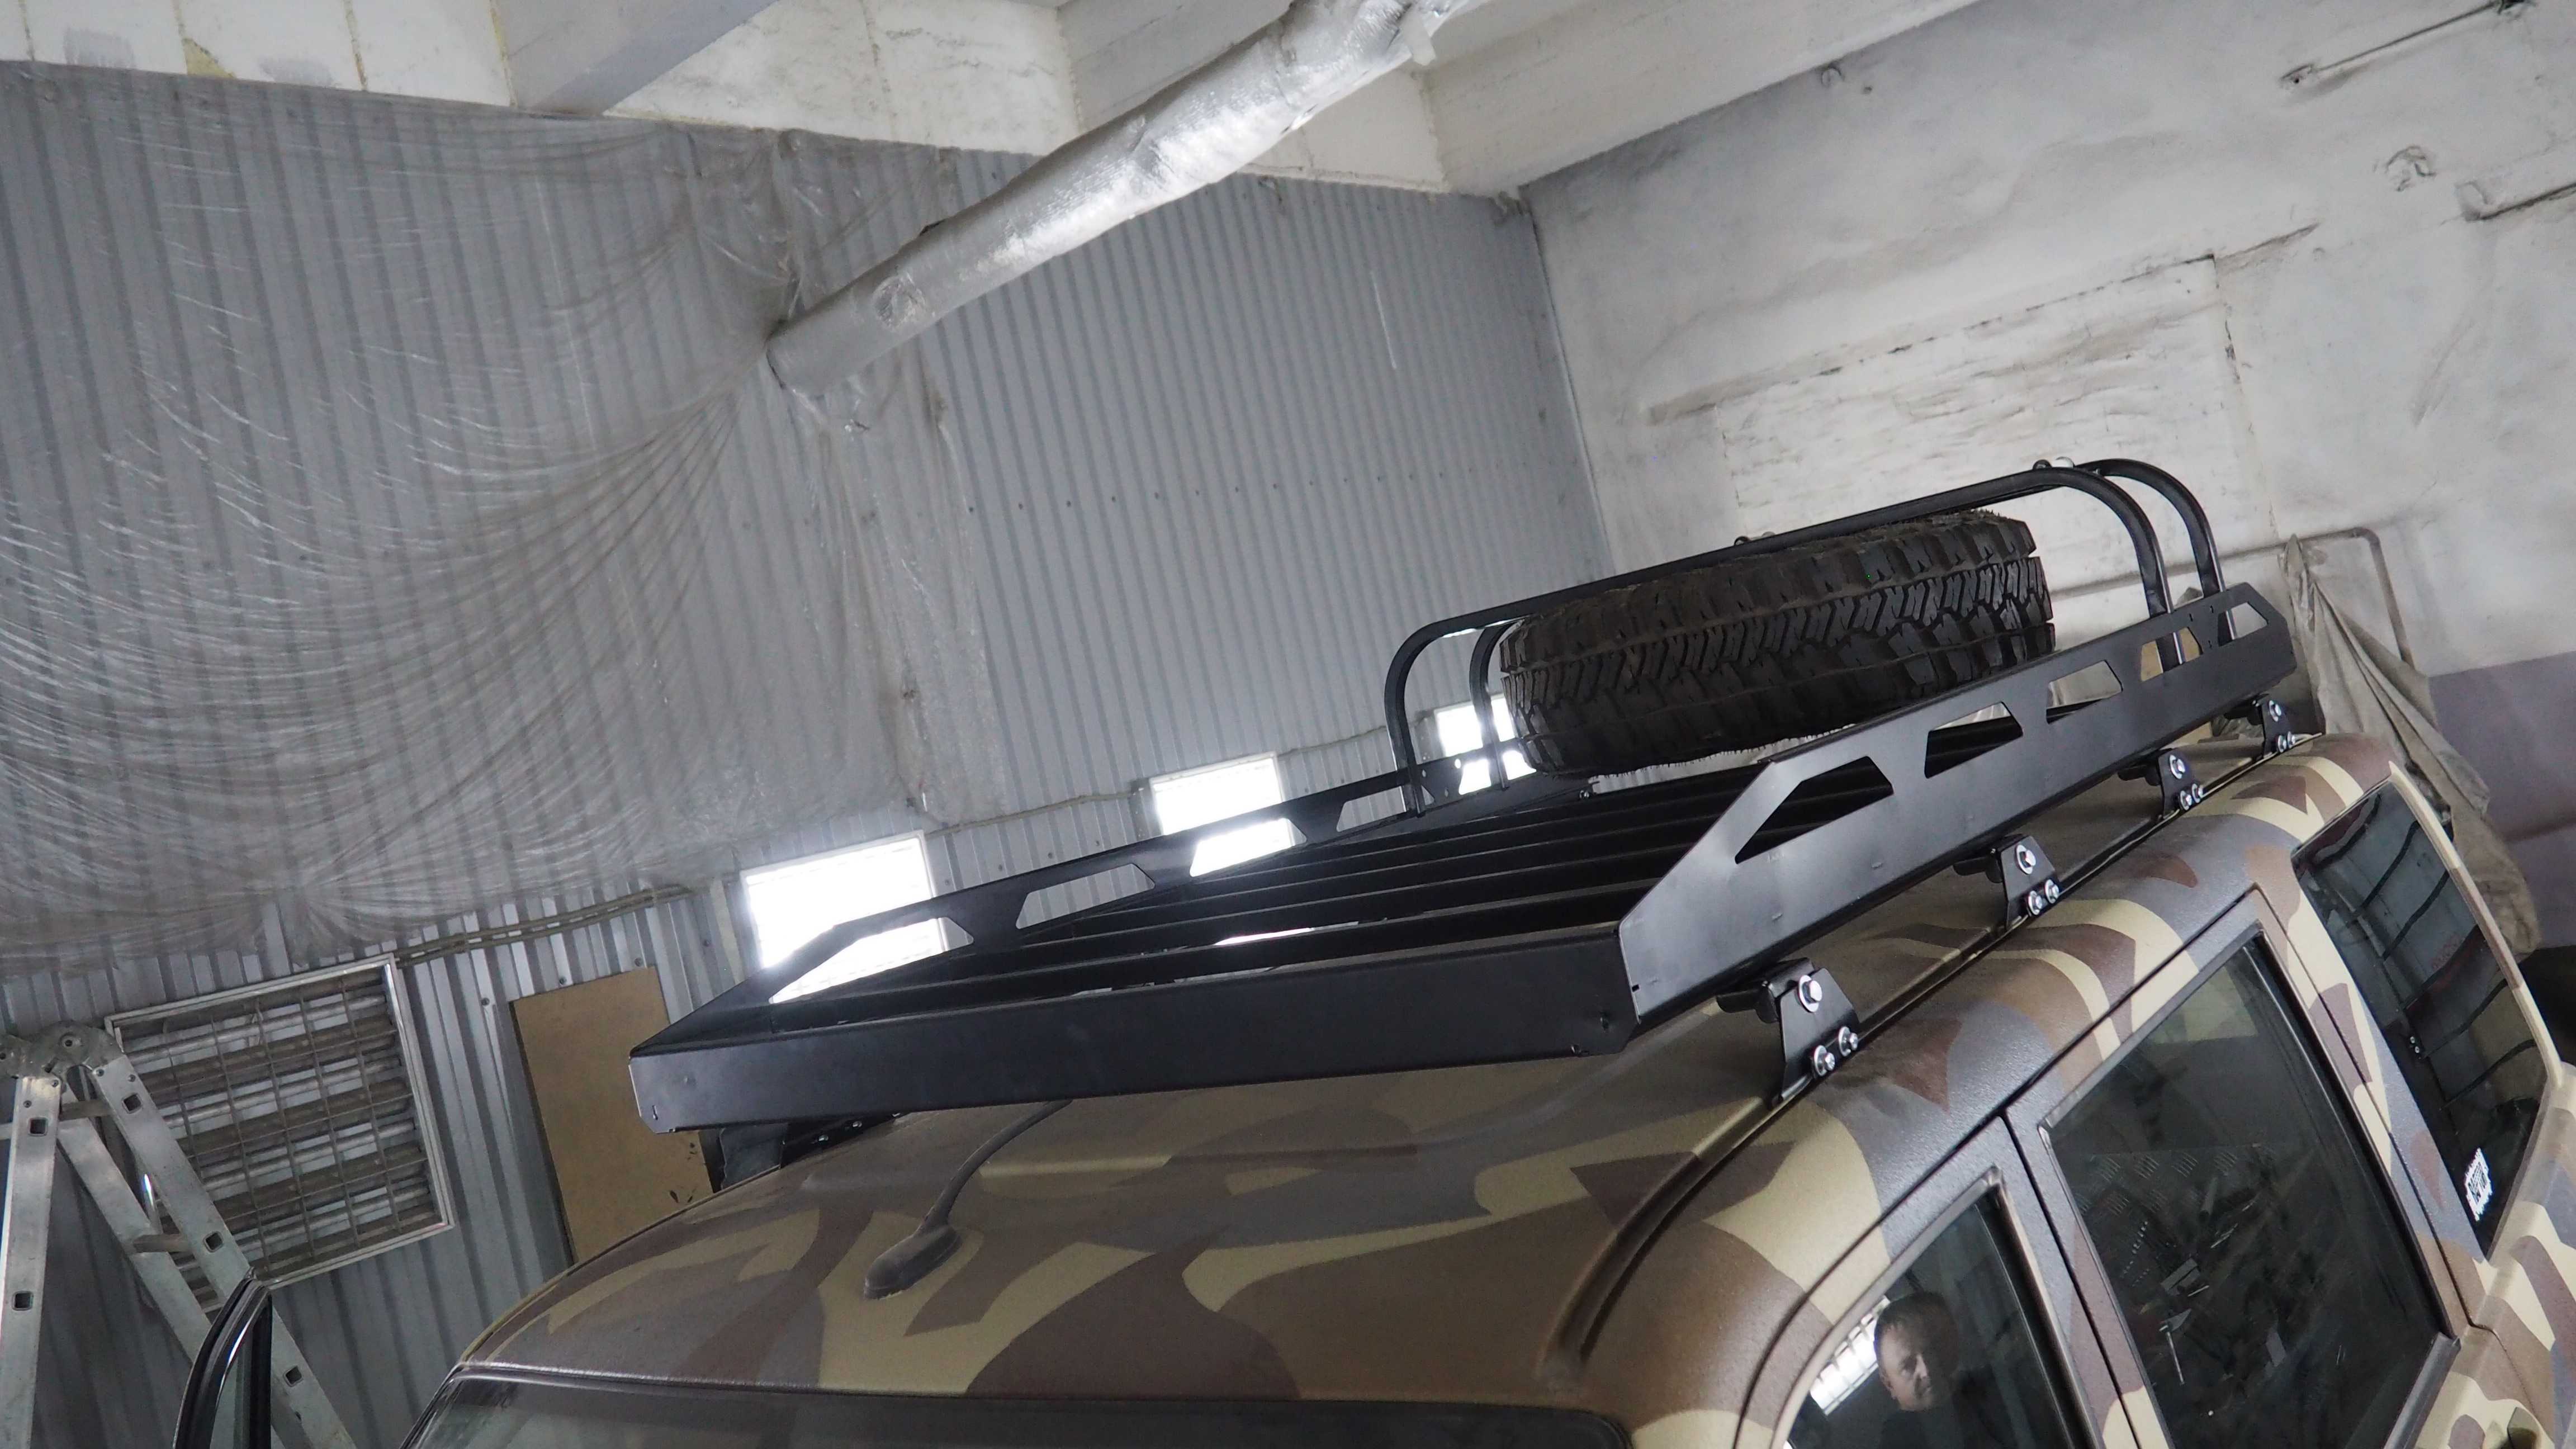 Багажник своими руками на крышу автомобиля - 110 фото обустройства и крепления багажника